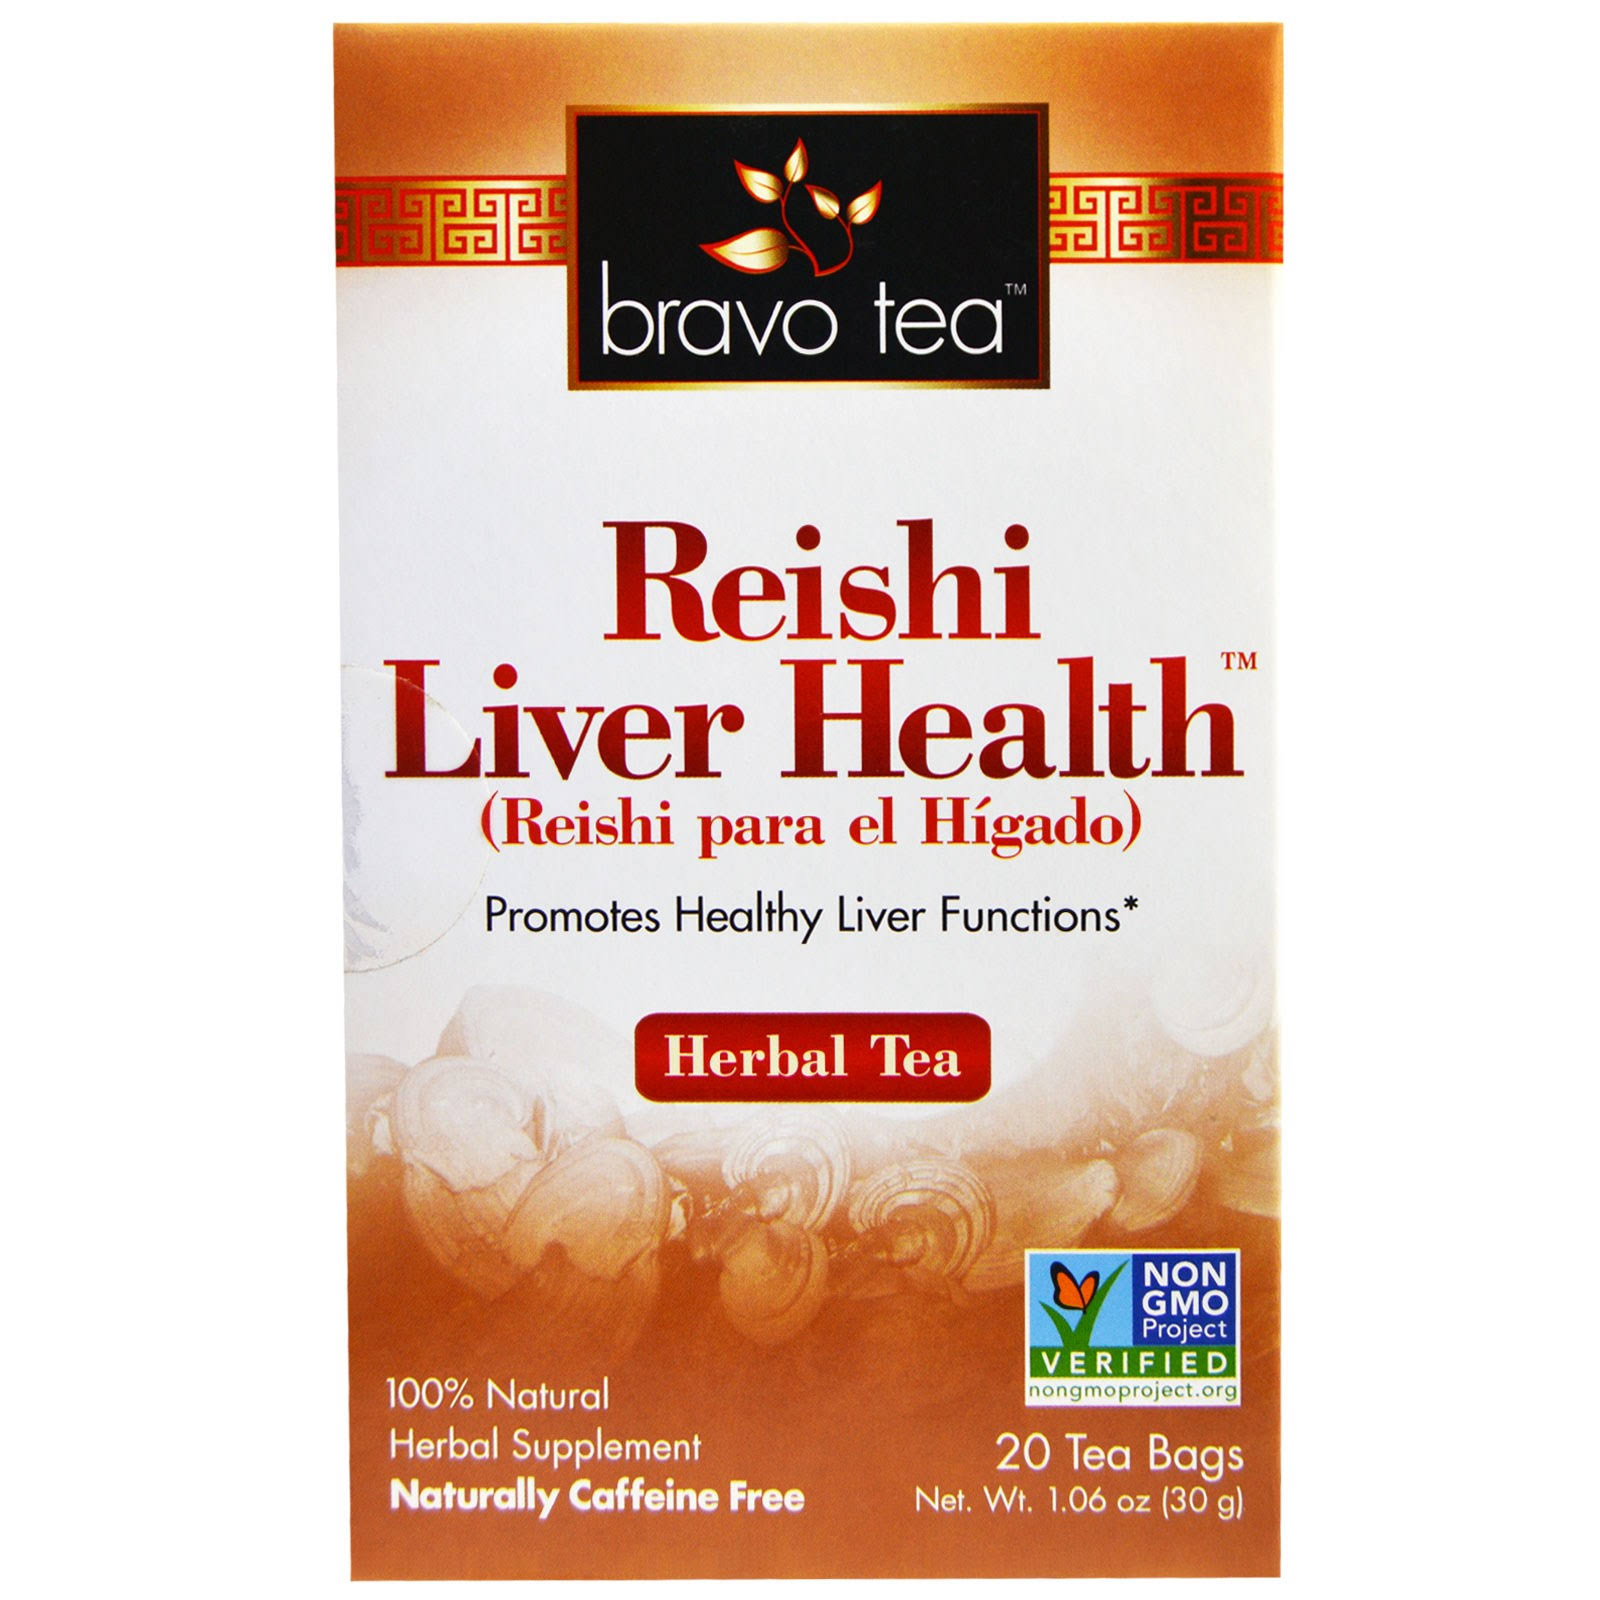 Bravo Tea Reishi Liver Health Herbal Tea - 20 Tea Bags, 30g